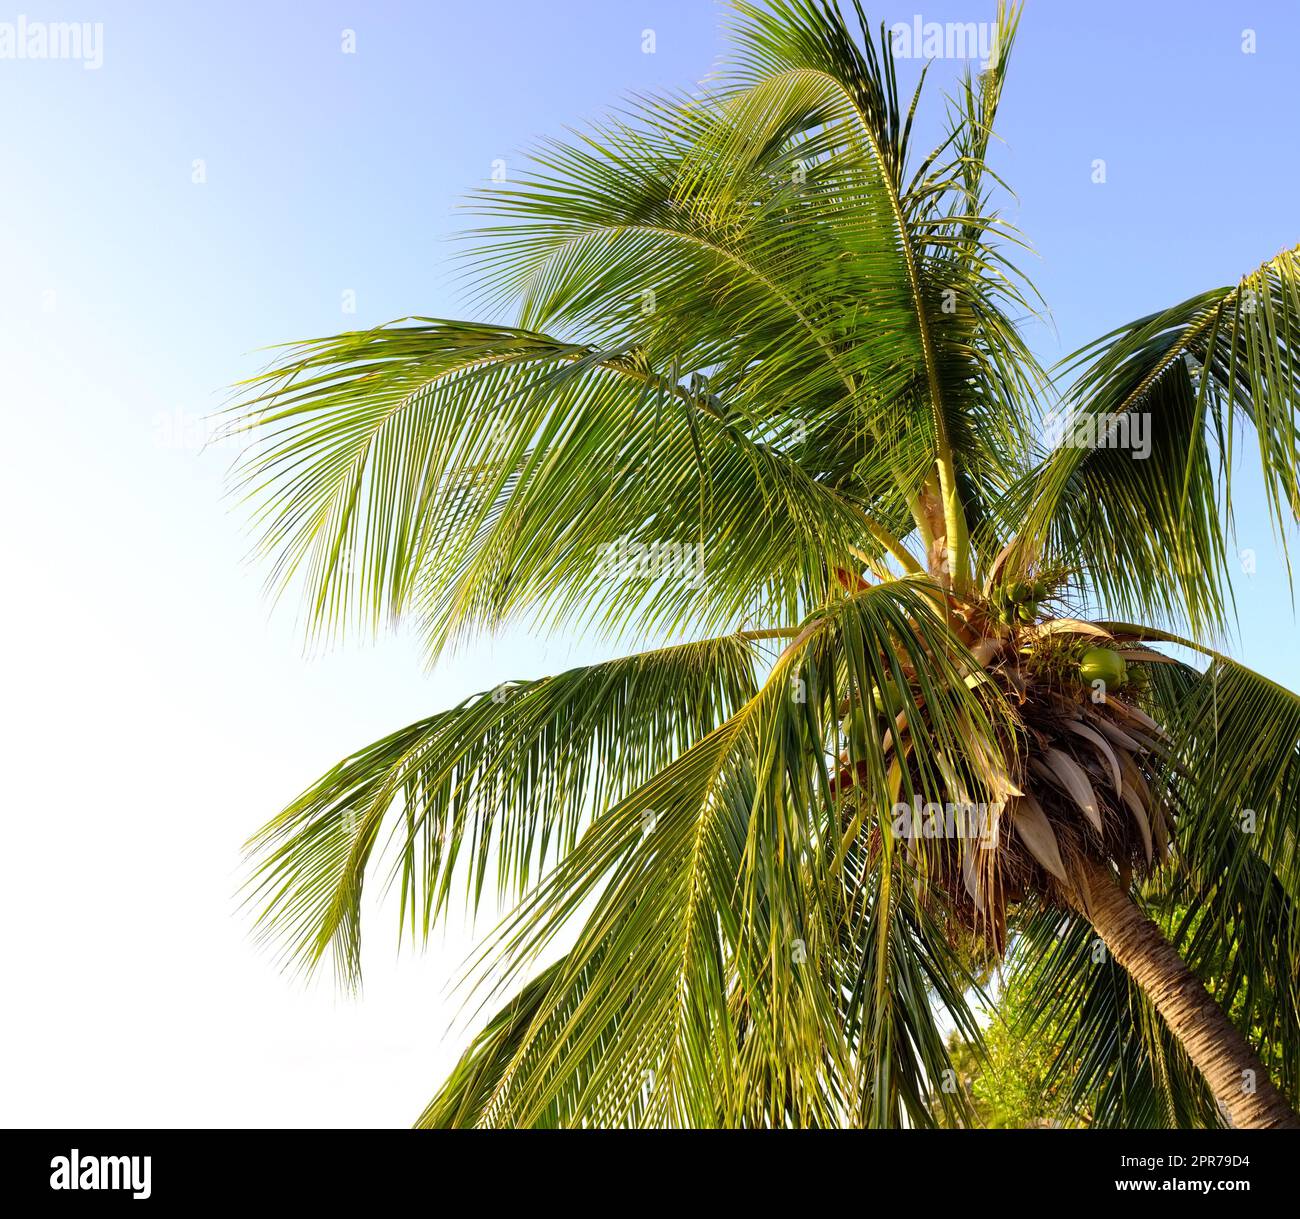 Eine Palme vor einem hellblauen Himmel. Ein Kokosnussbaum mit Blättern, die unter der Sonne von unten scheinen. Eine entspannende exotische Insel, ein Paradies im Ausland oder ein tropisches Reiseziel Stockfoto